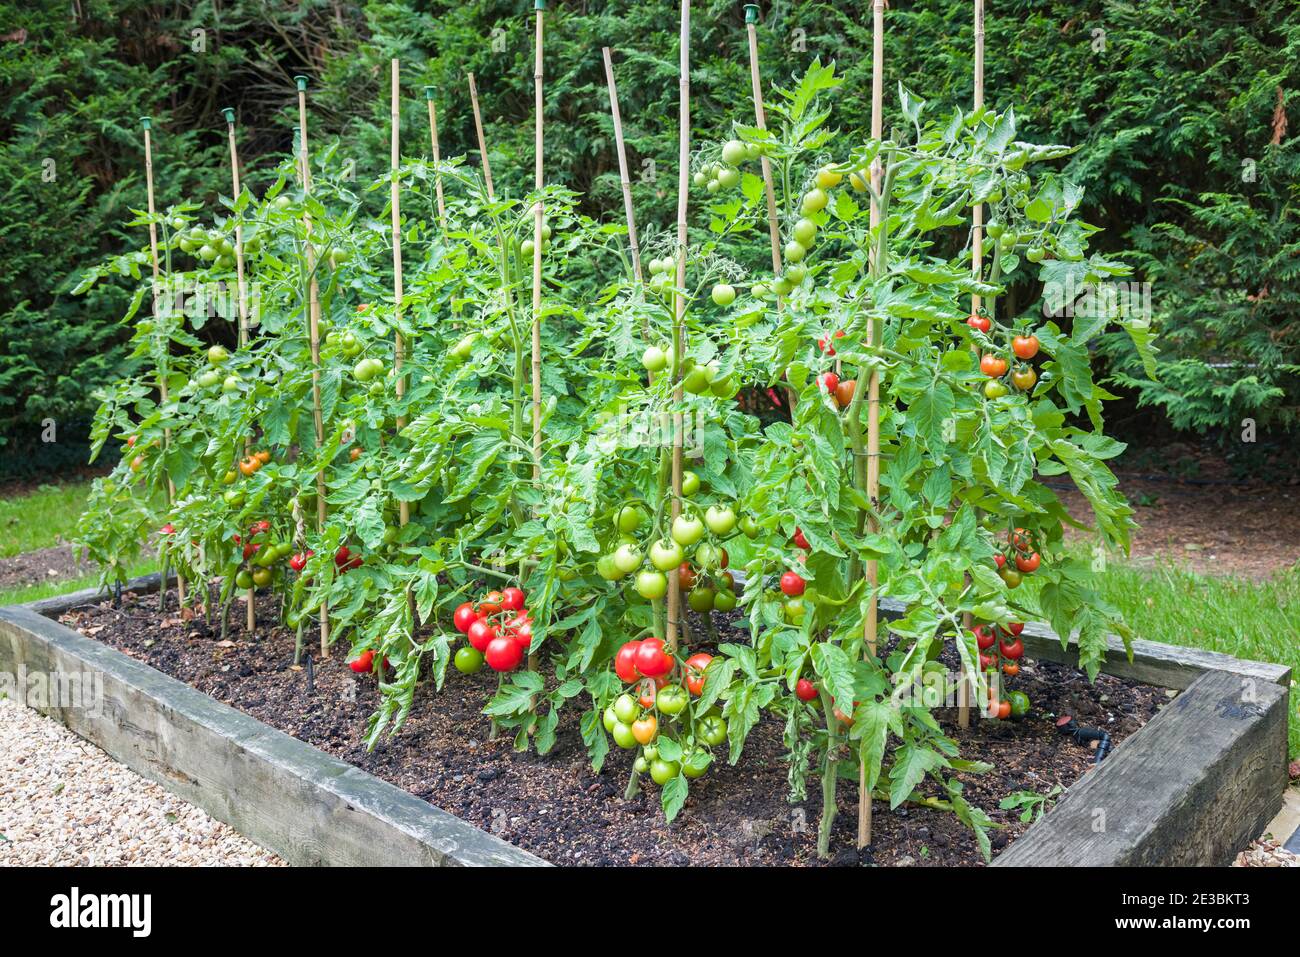 Tomatenpflanzen mit reifen roten Tomaten wachsen im Freien, draußen, in einem Garten in England, Großbritannien Stockfoto